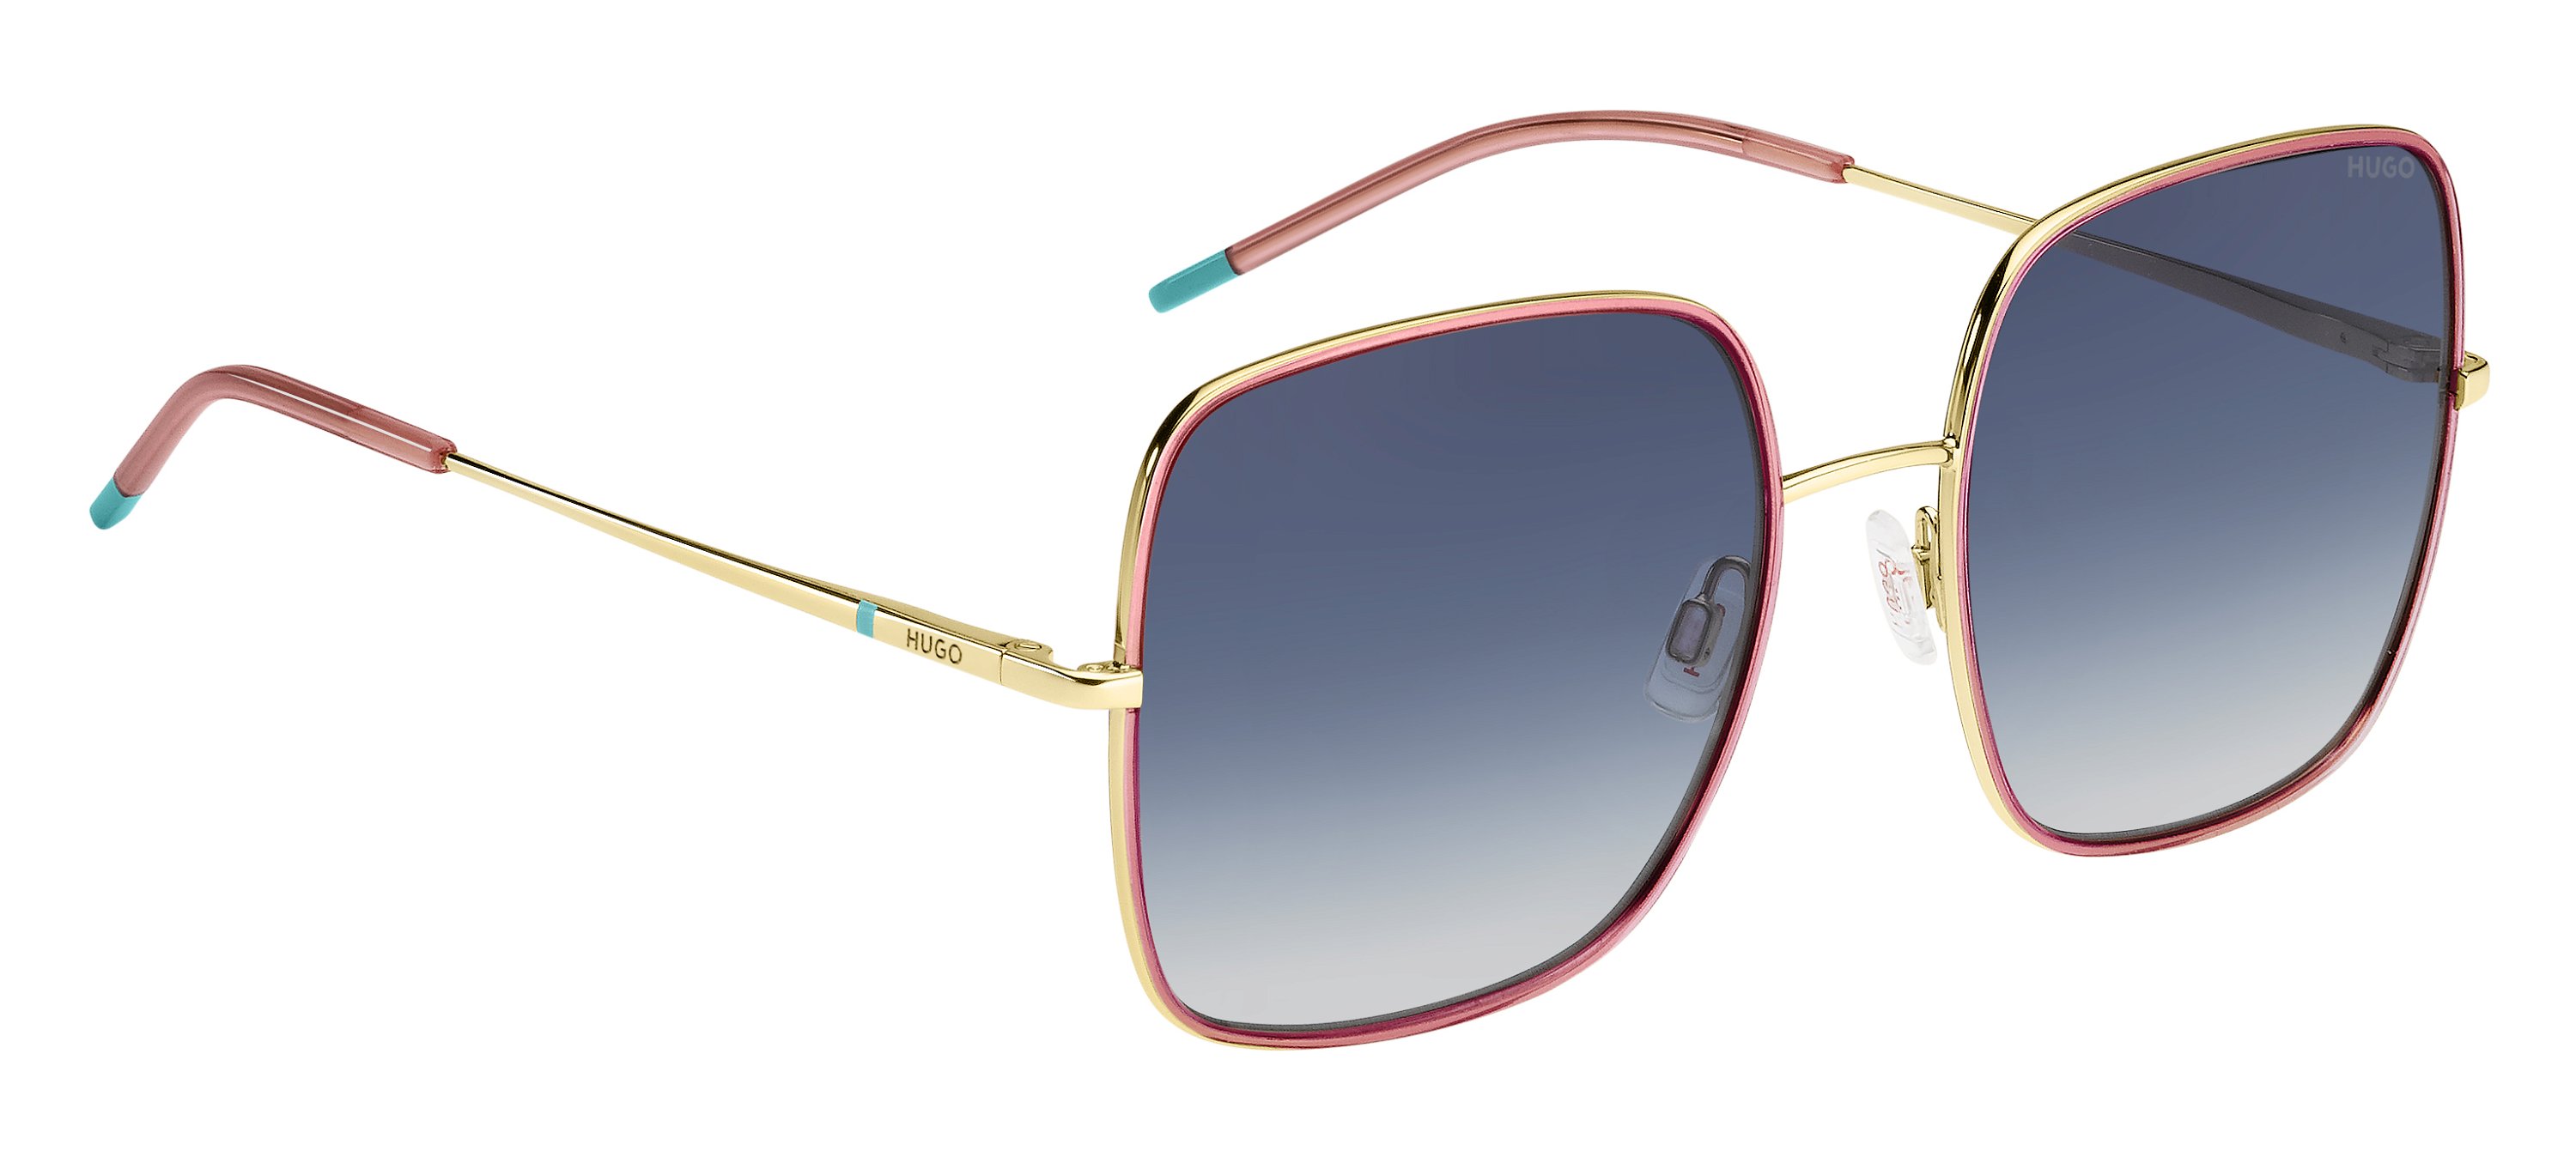 Das Bild zeigt die Sonnenbrille HG1293/S EYR von der Marke Hugo in gold/pink.